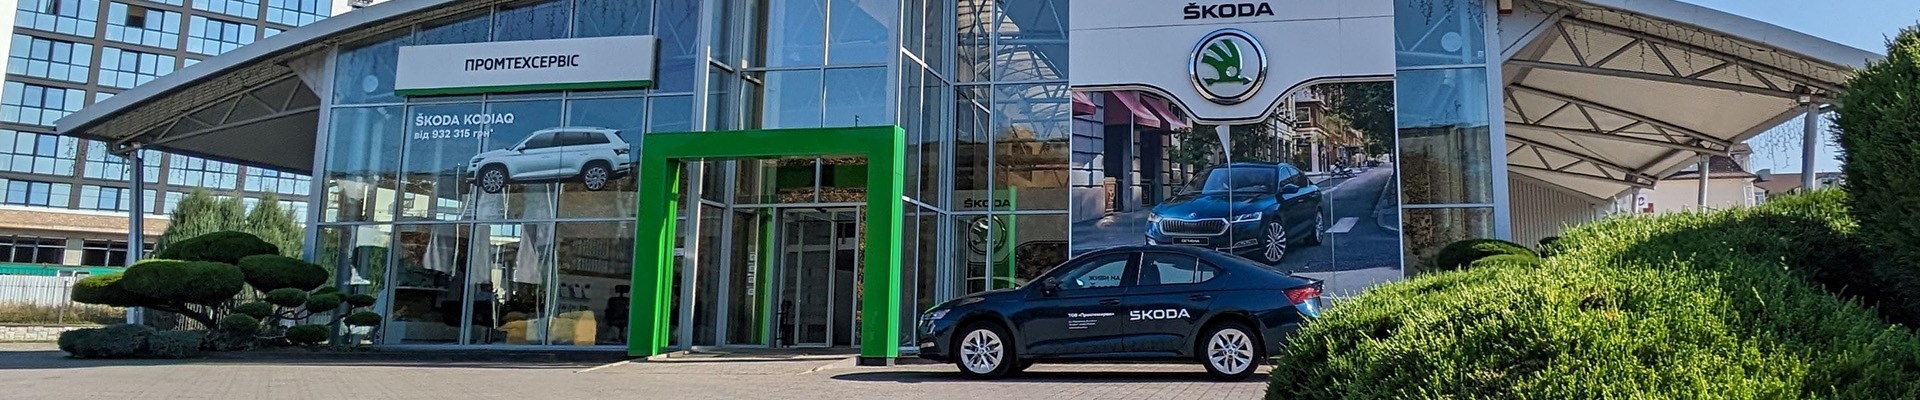 Офіційний дилер Škoda у Луцьку святкує 20-річний ювілей